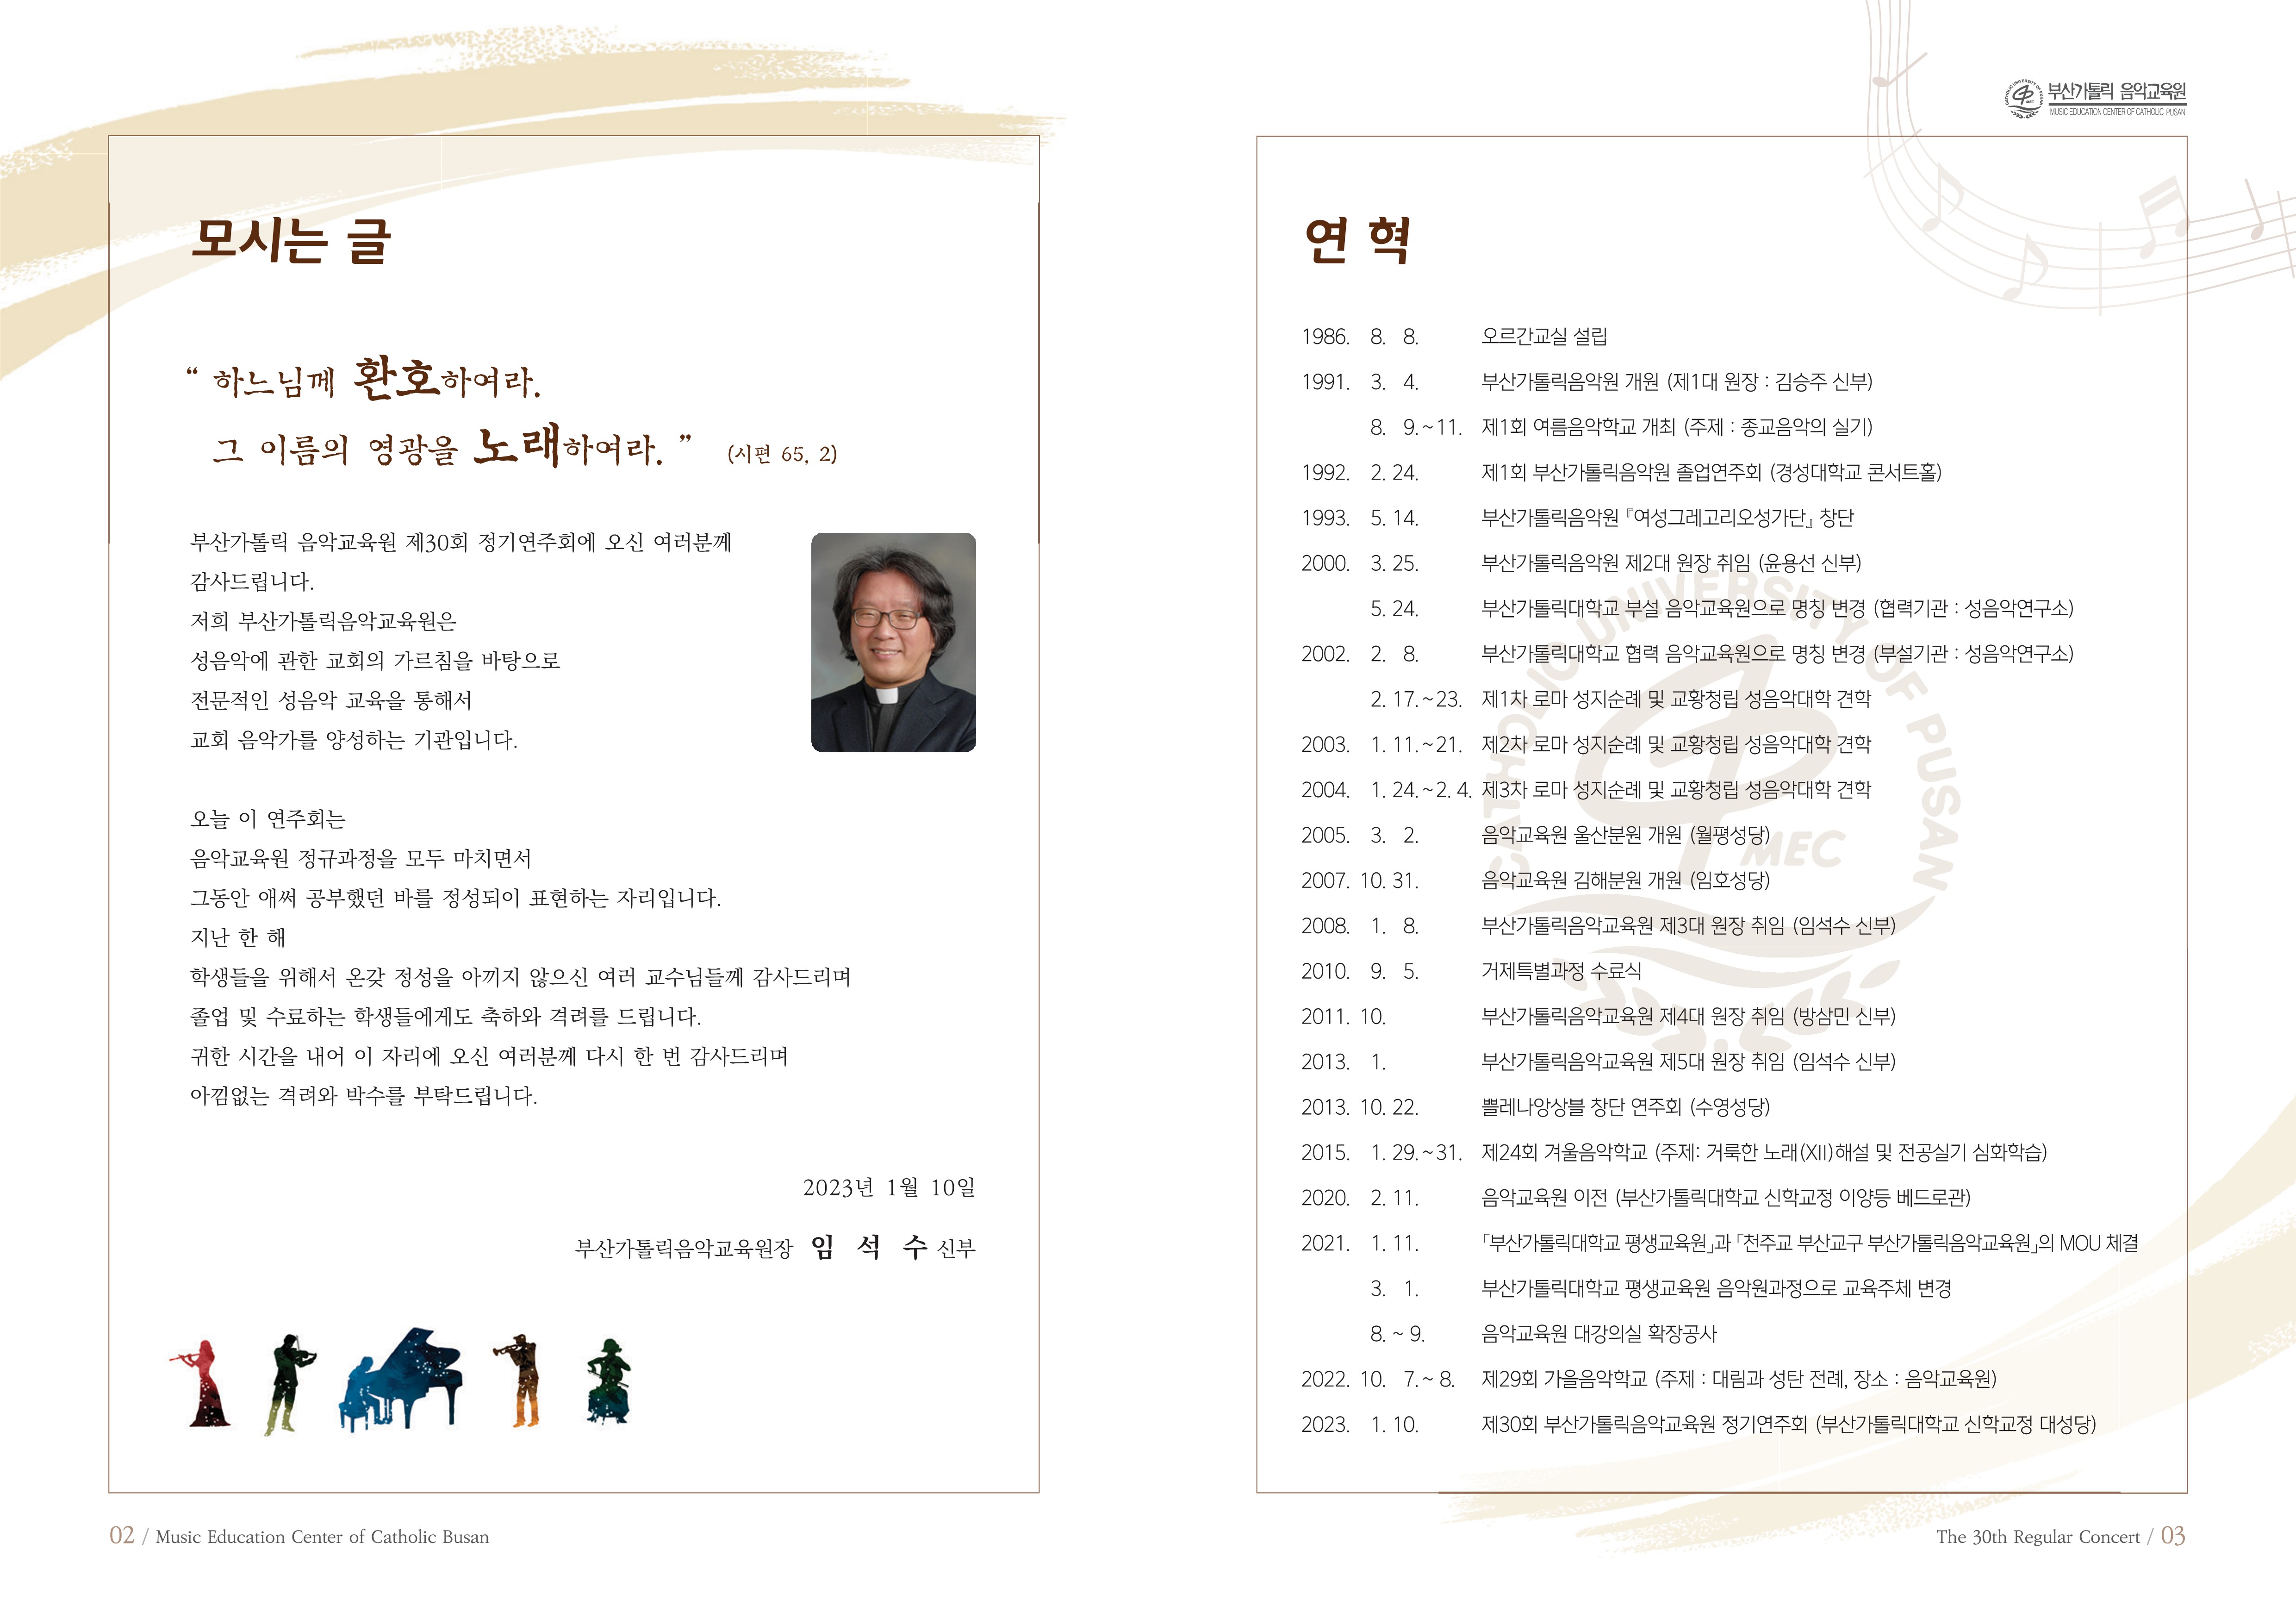 제30회 정기연주회 - 팜플렛(A4) 8p (최종)_2.jpg